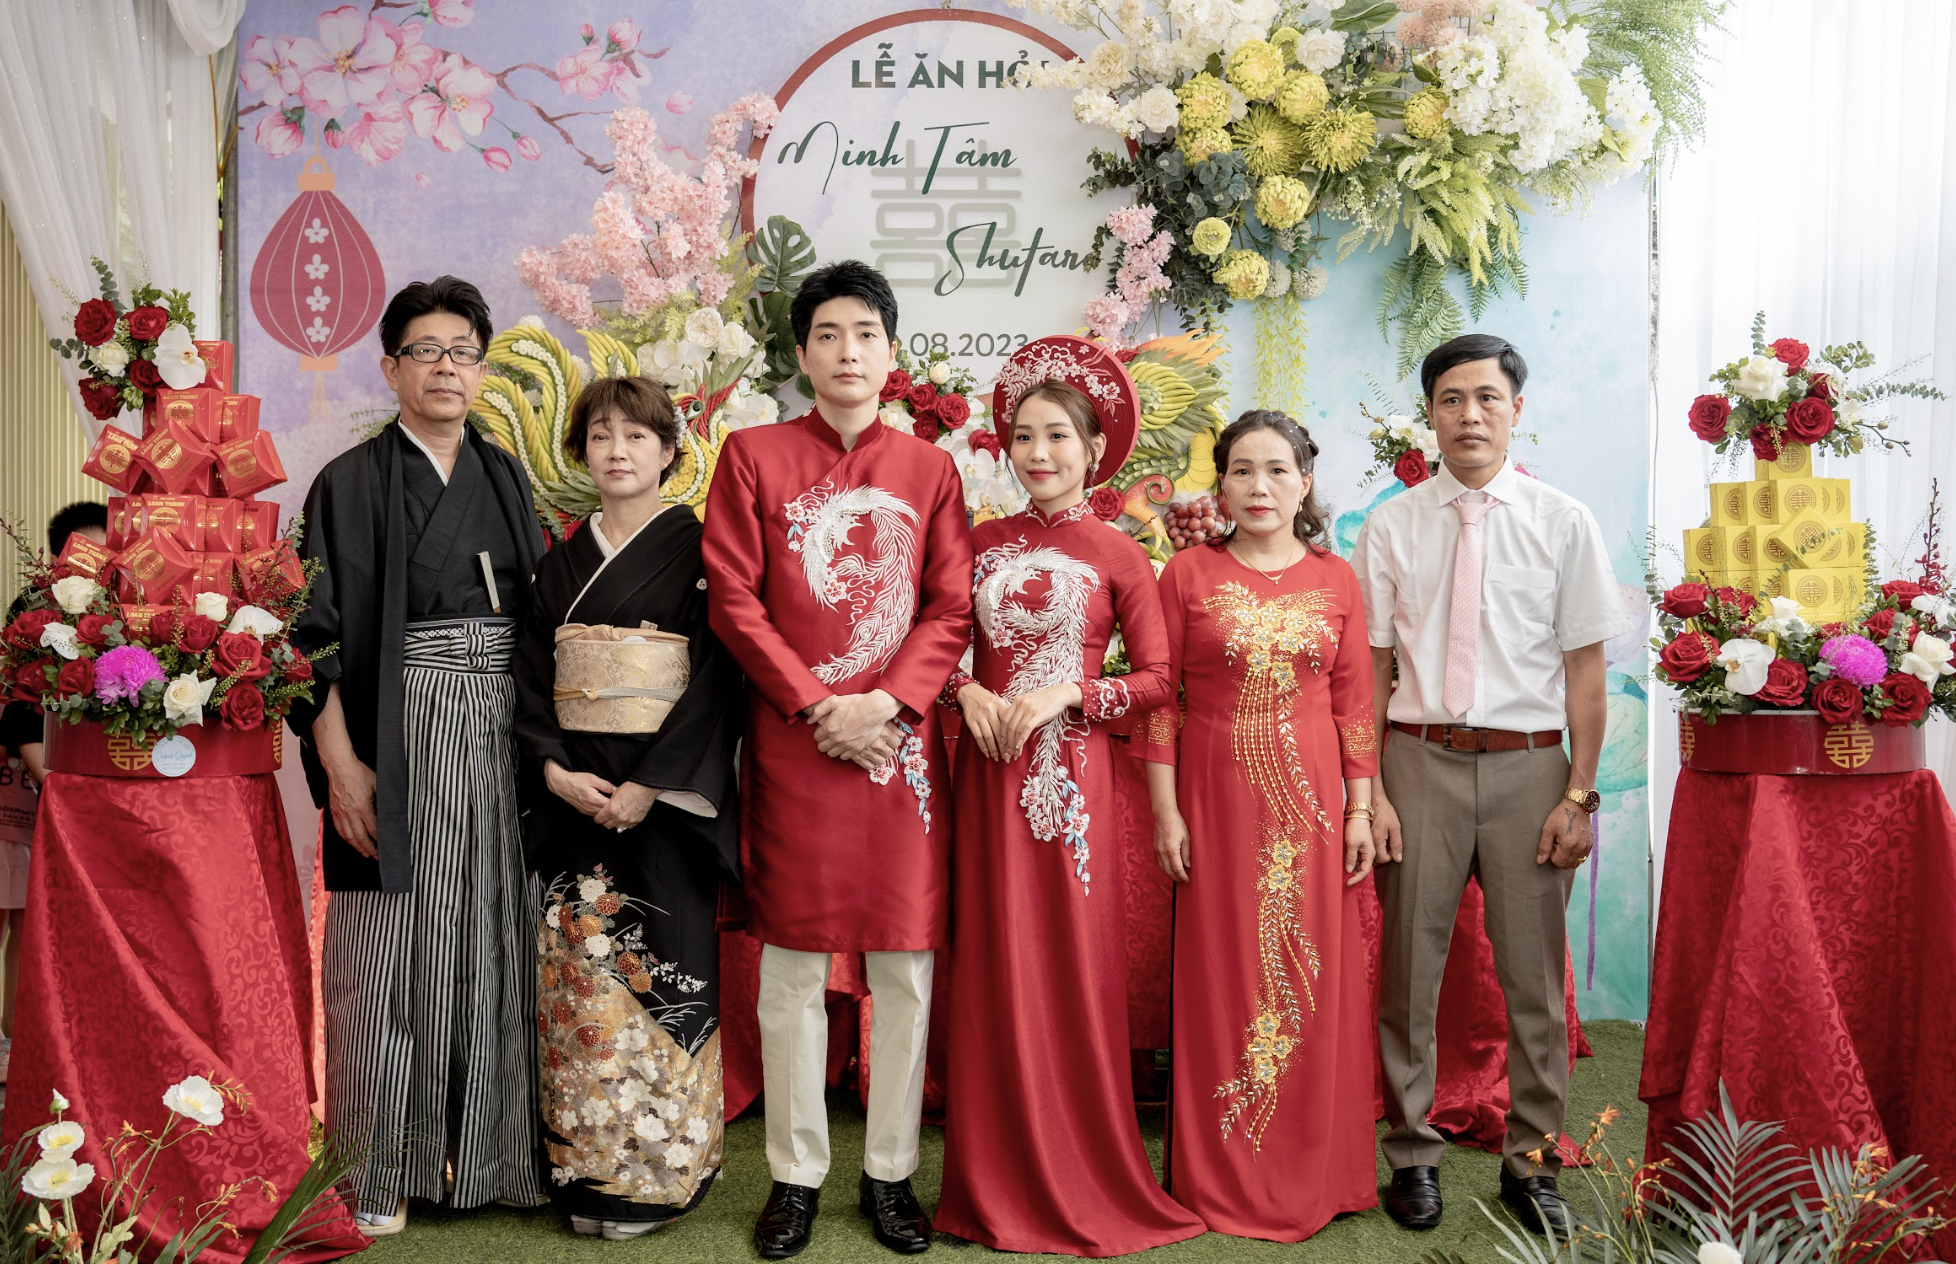 Đám cưới đặc biệt của chú rể Nhật và cô dâu Việt nhận 'mưa tim' - Ảnh 3.